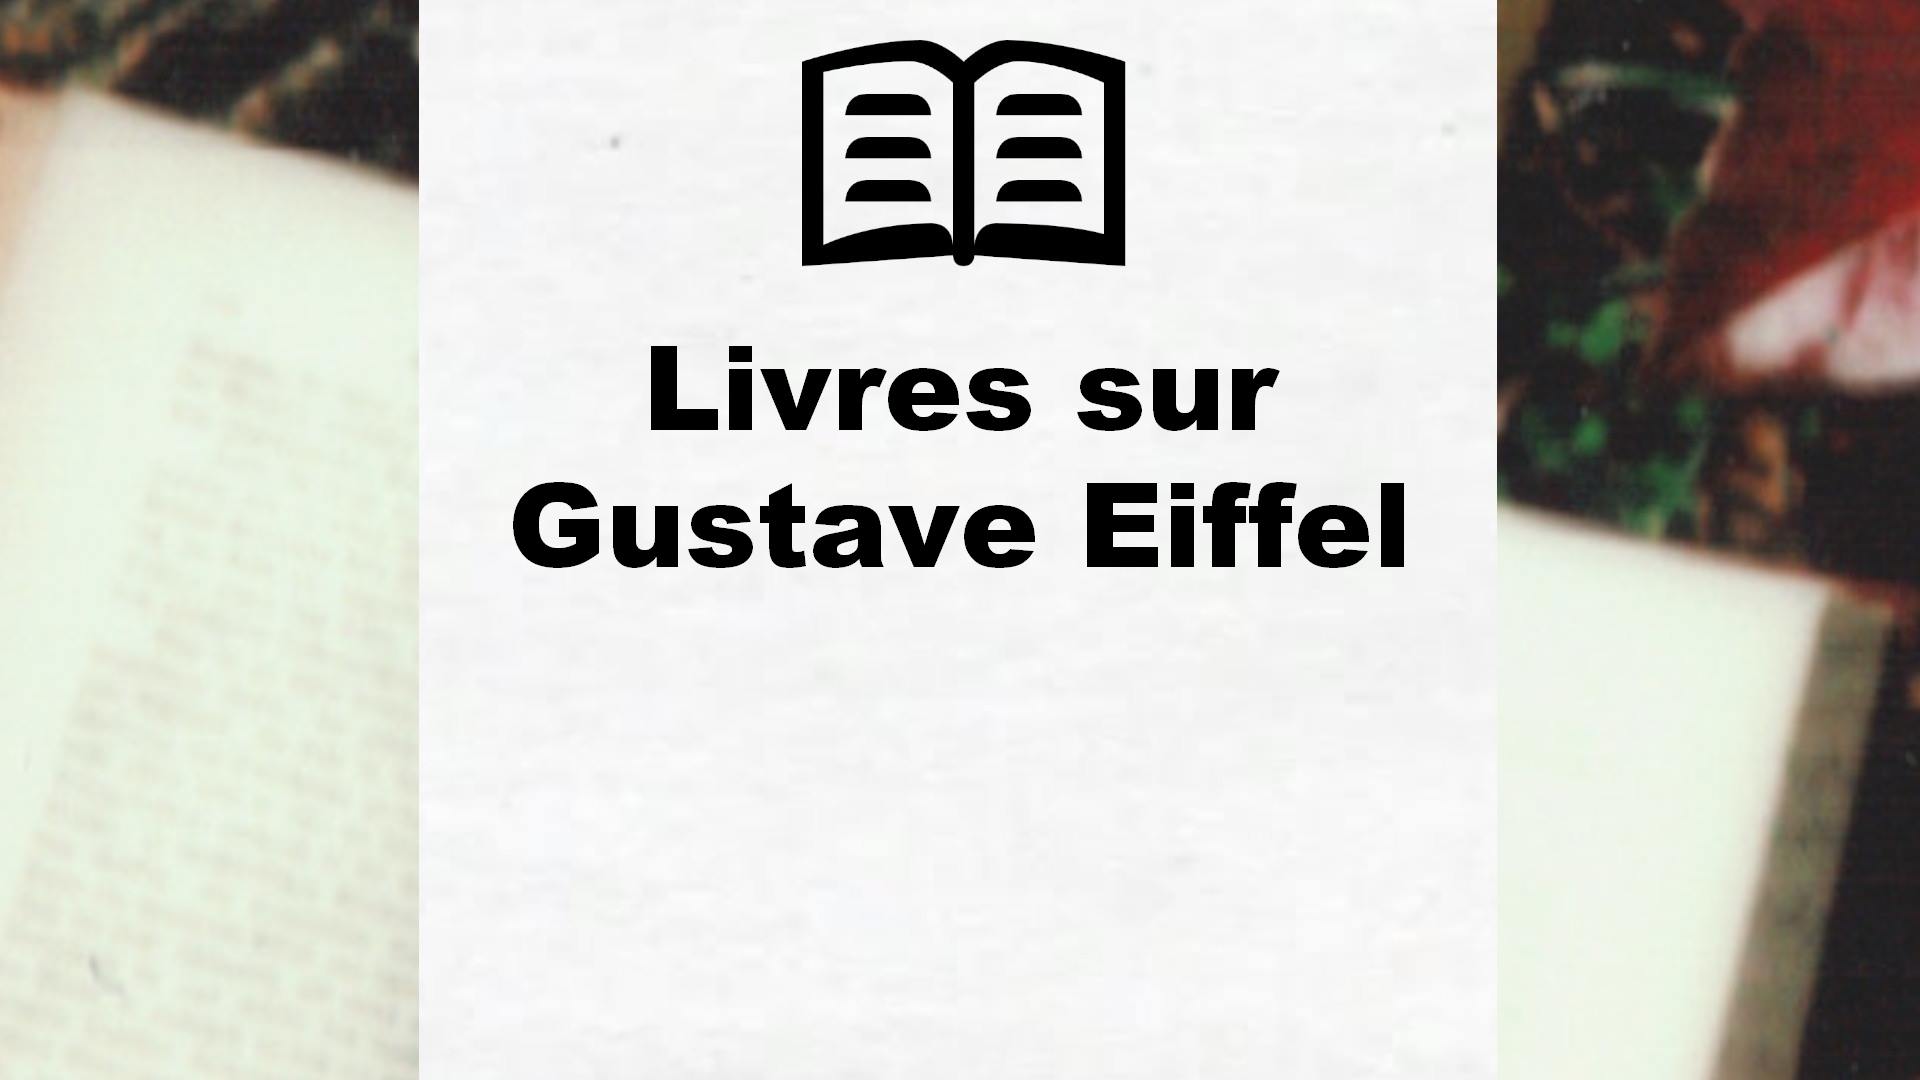 Livres sur Gustave Eiffel